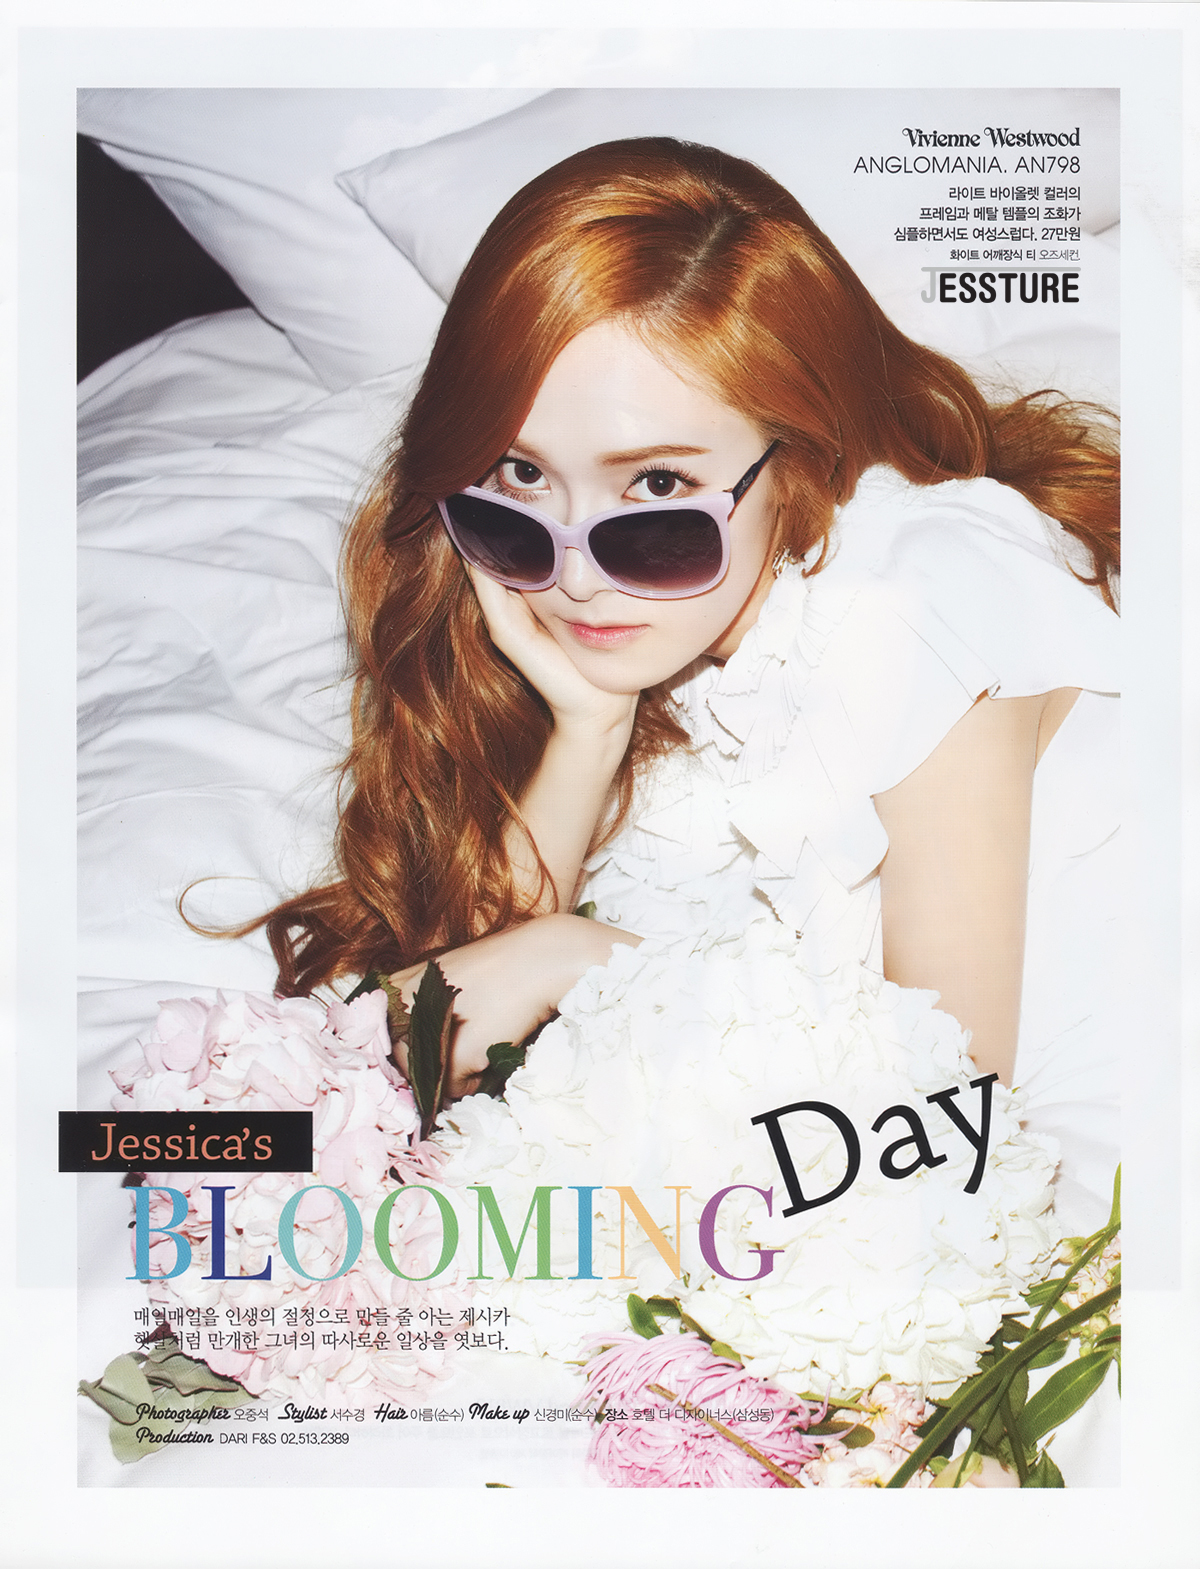 [PICS][20-03-2013]Jessica trên tạp chí "Cosmopolitan" 251C0B355149C7BB20F213